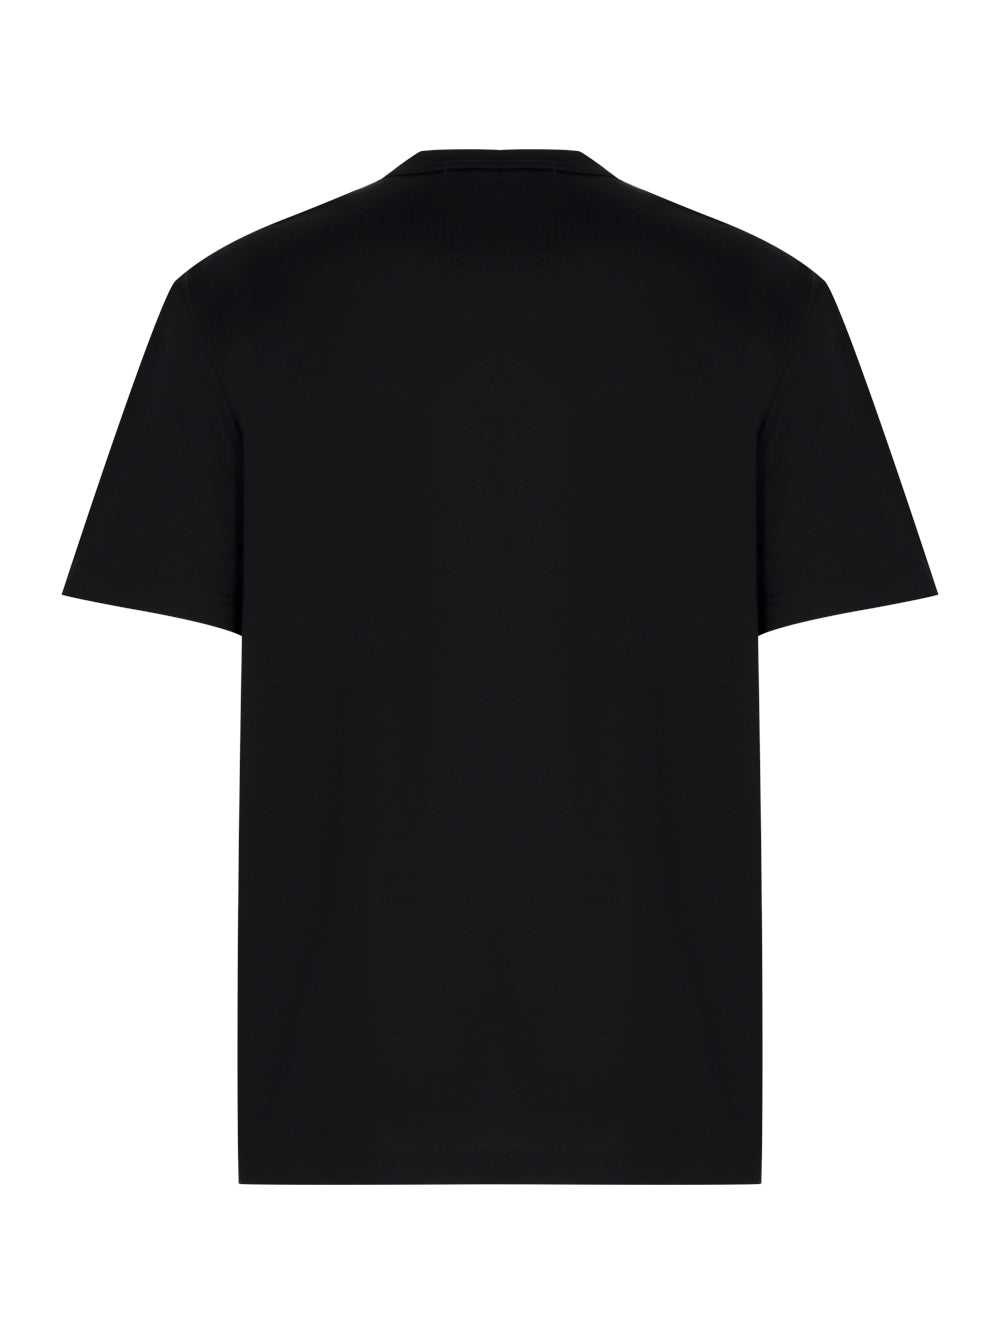 Cotton Jersey Garment Print Black